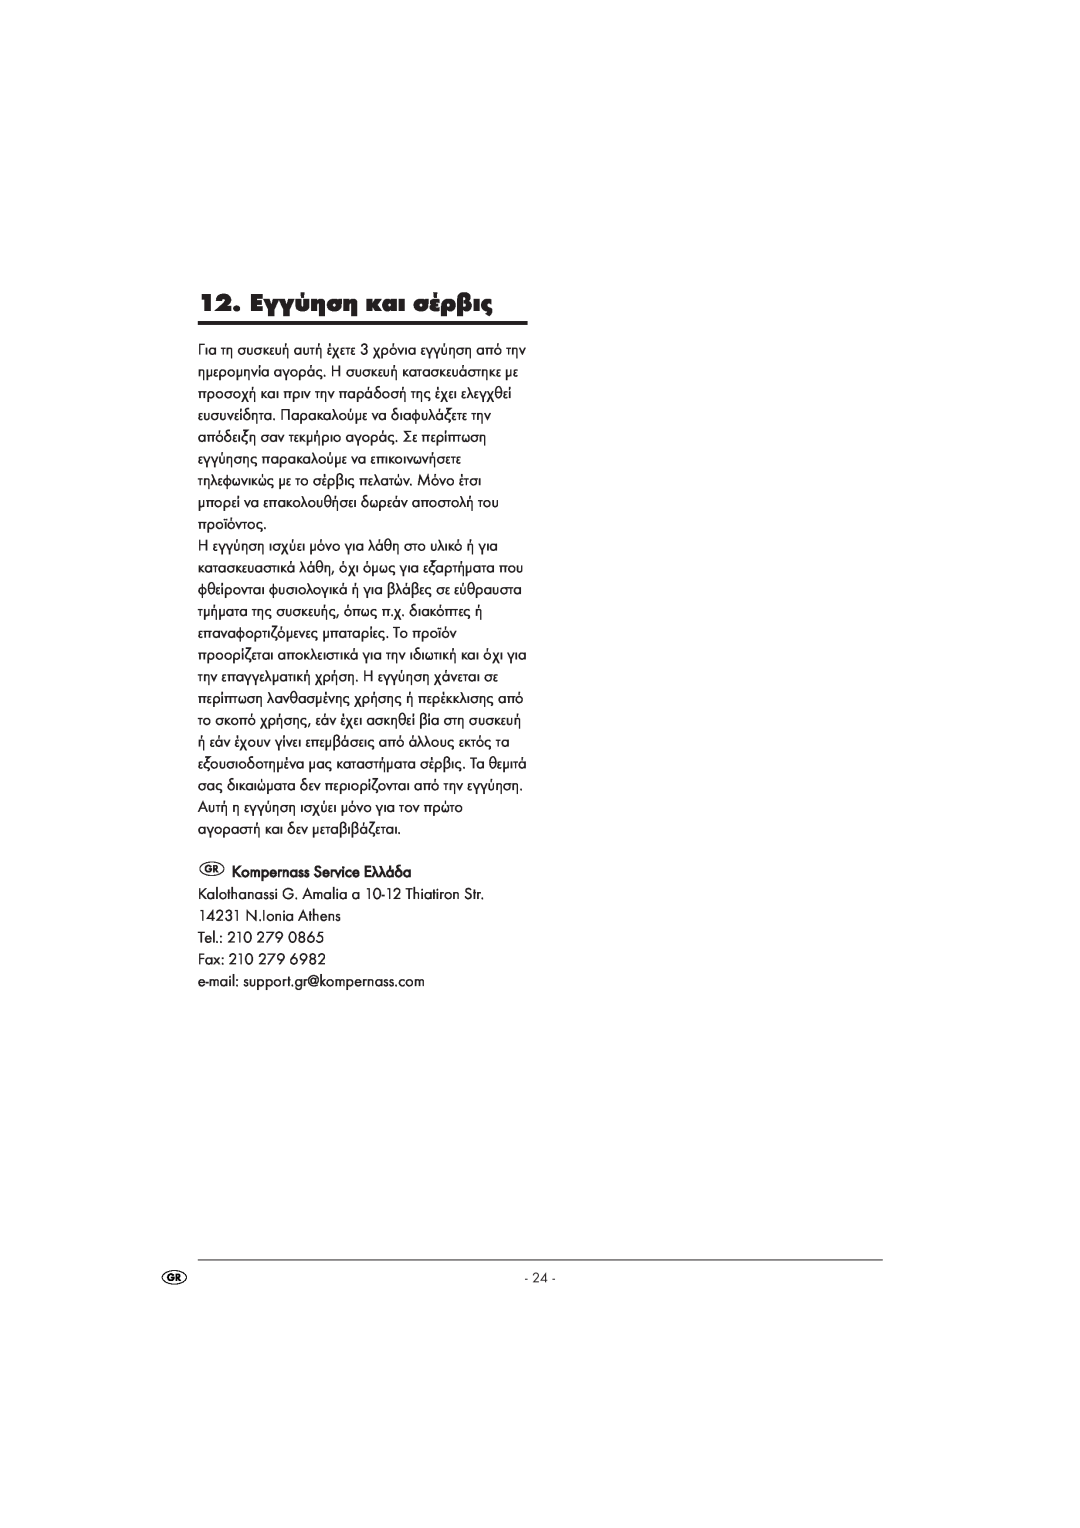 Kompernass KH 1105 manual 12. Εγγύηση και σέρβις, Tel. 210 279 Fax 